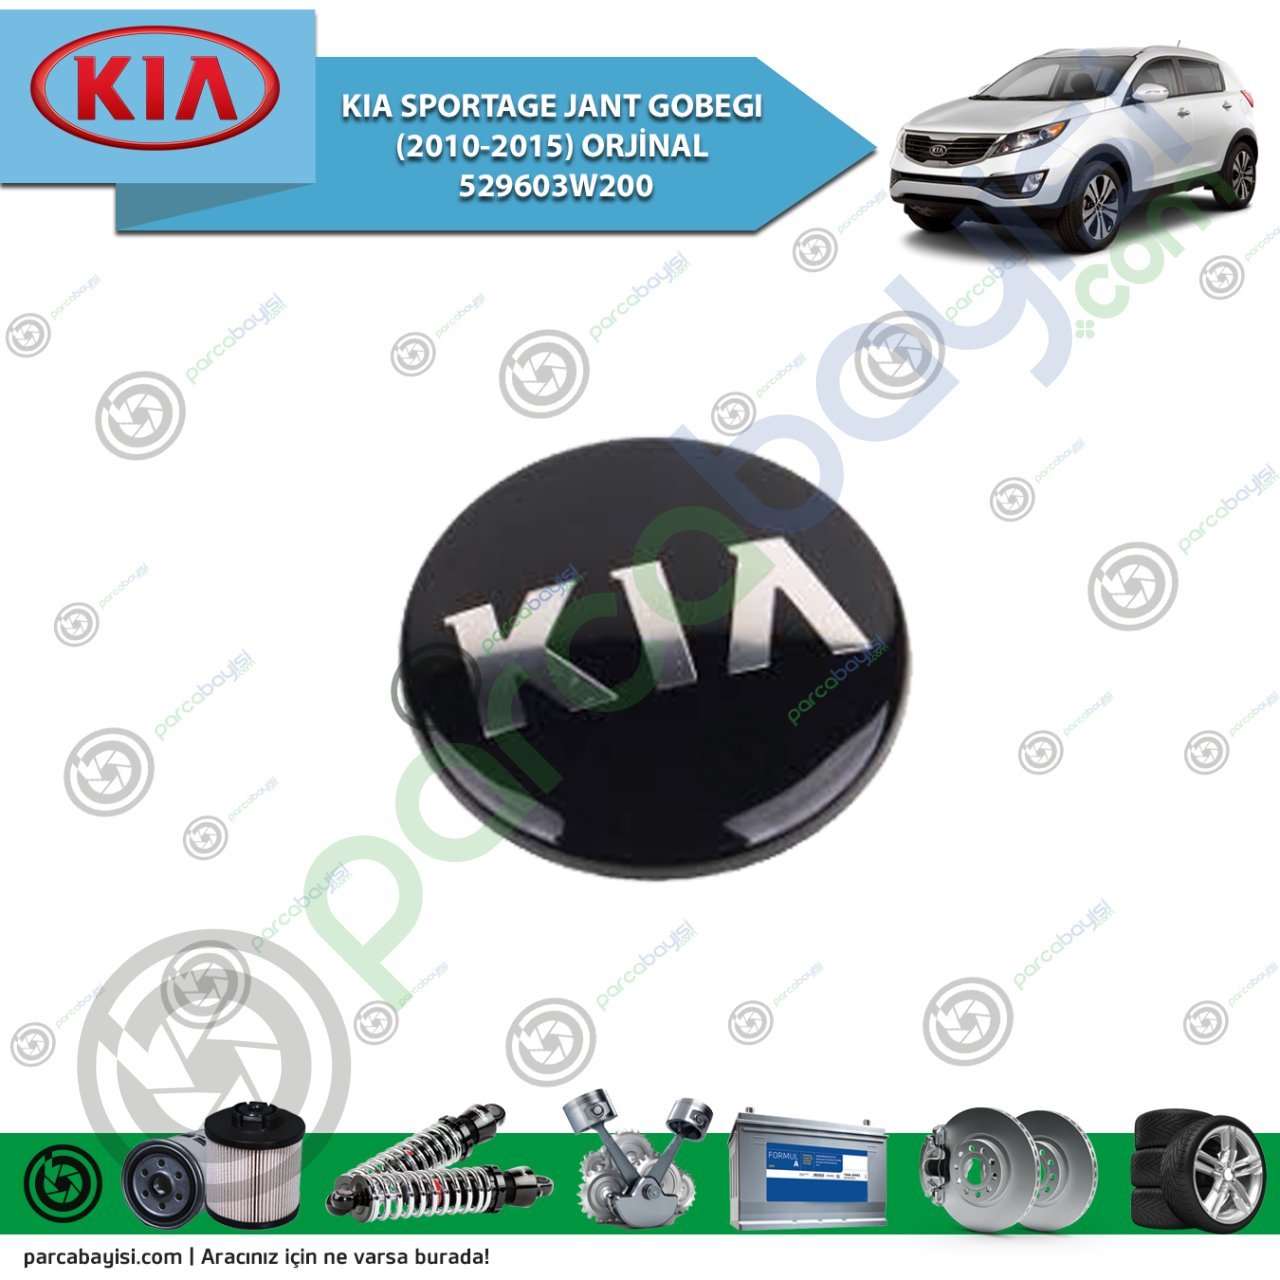 Kia Sportage-Ceed Jant Gobegı (2010-2015) Orjinal | 529603W200